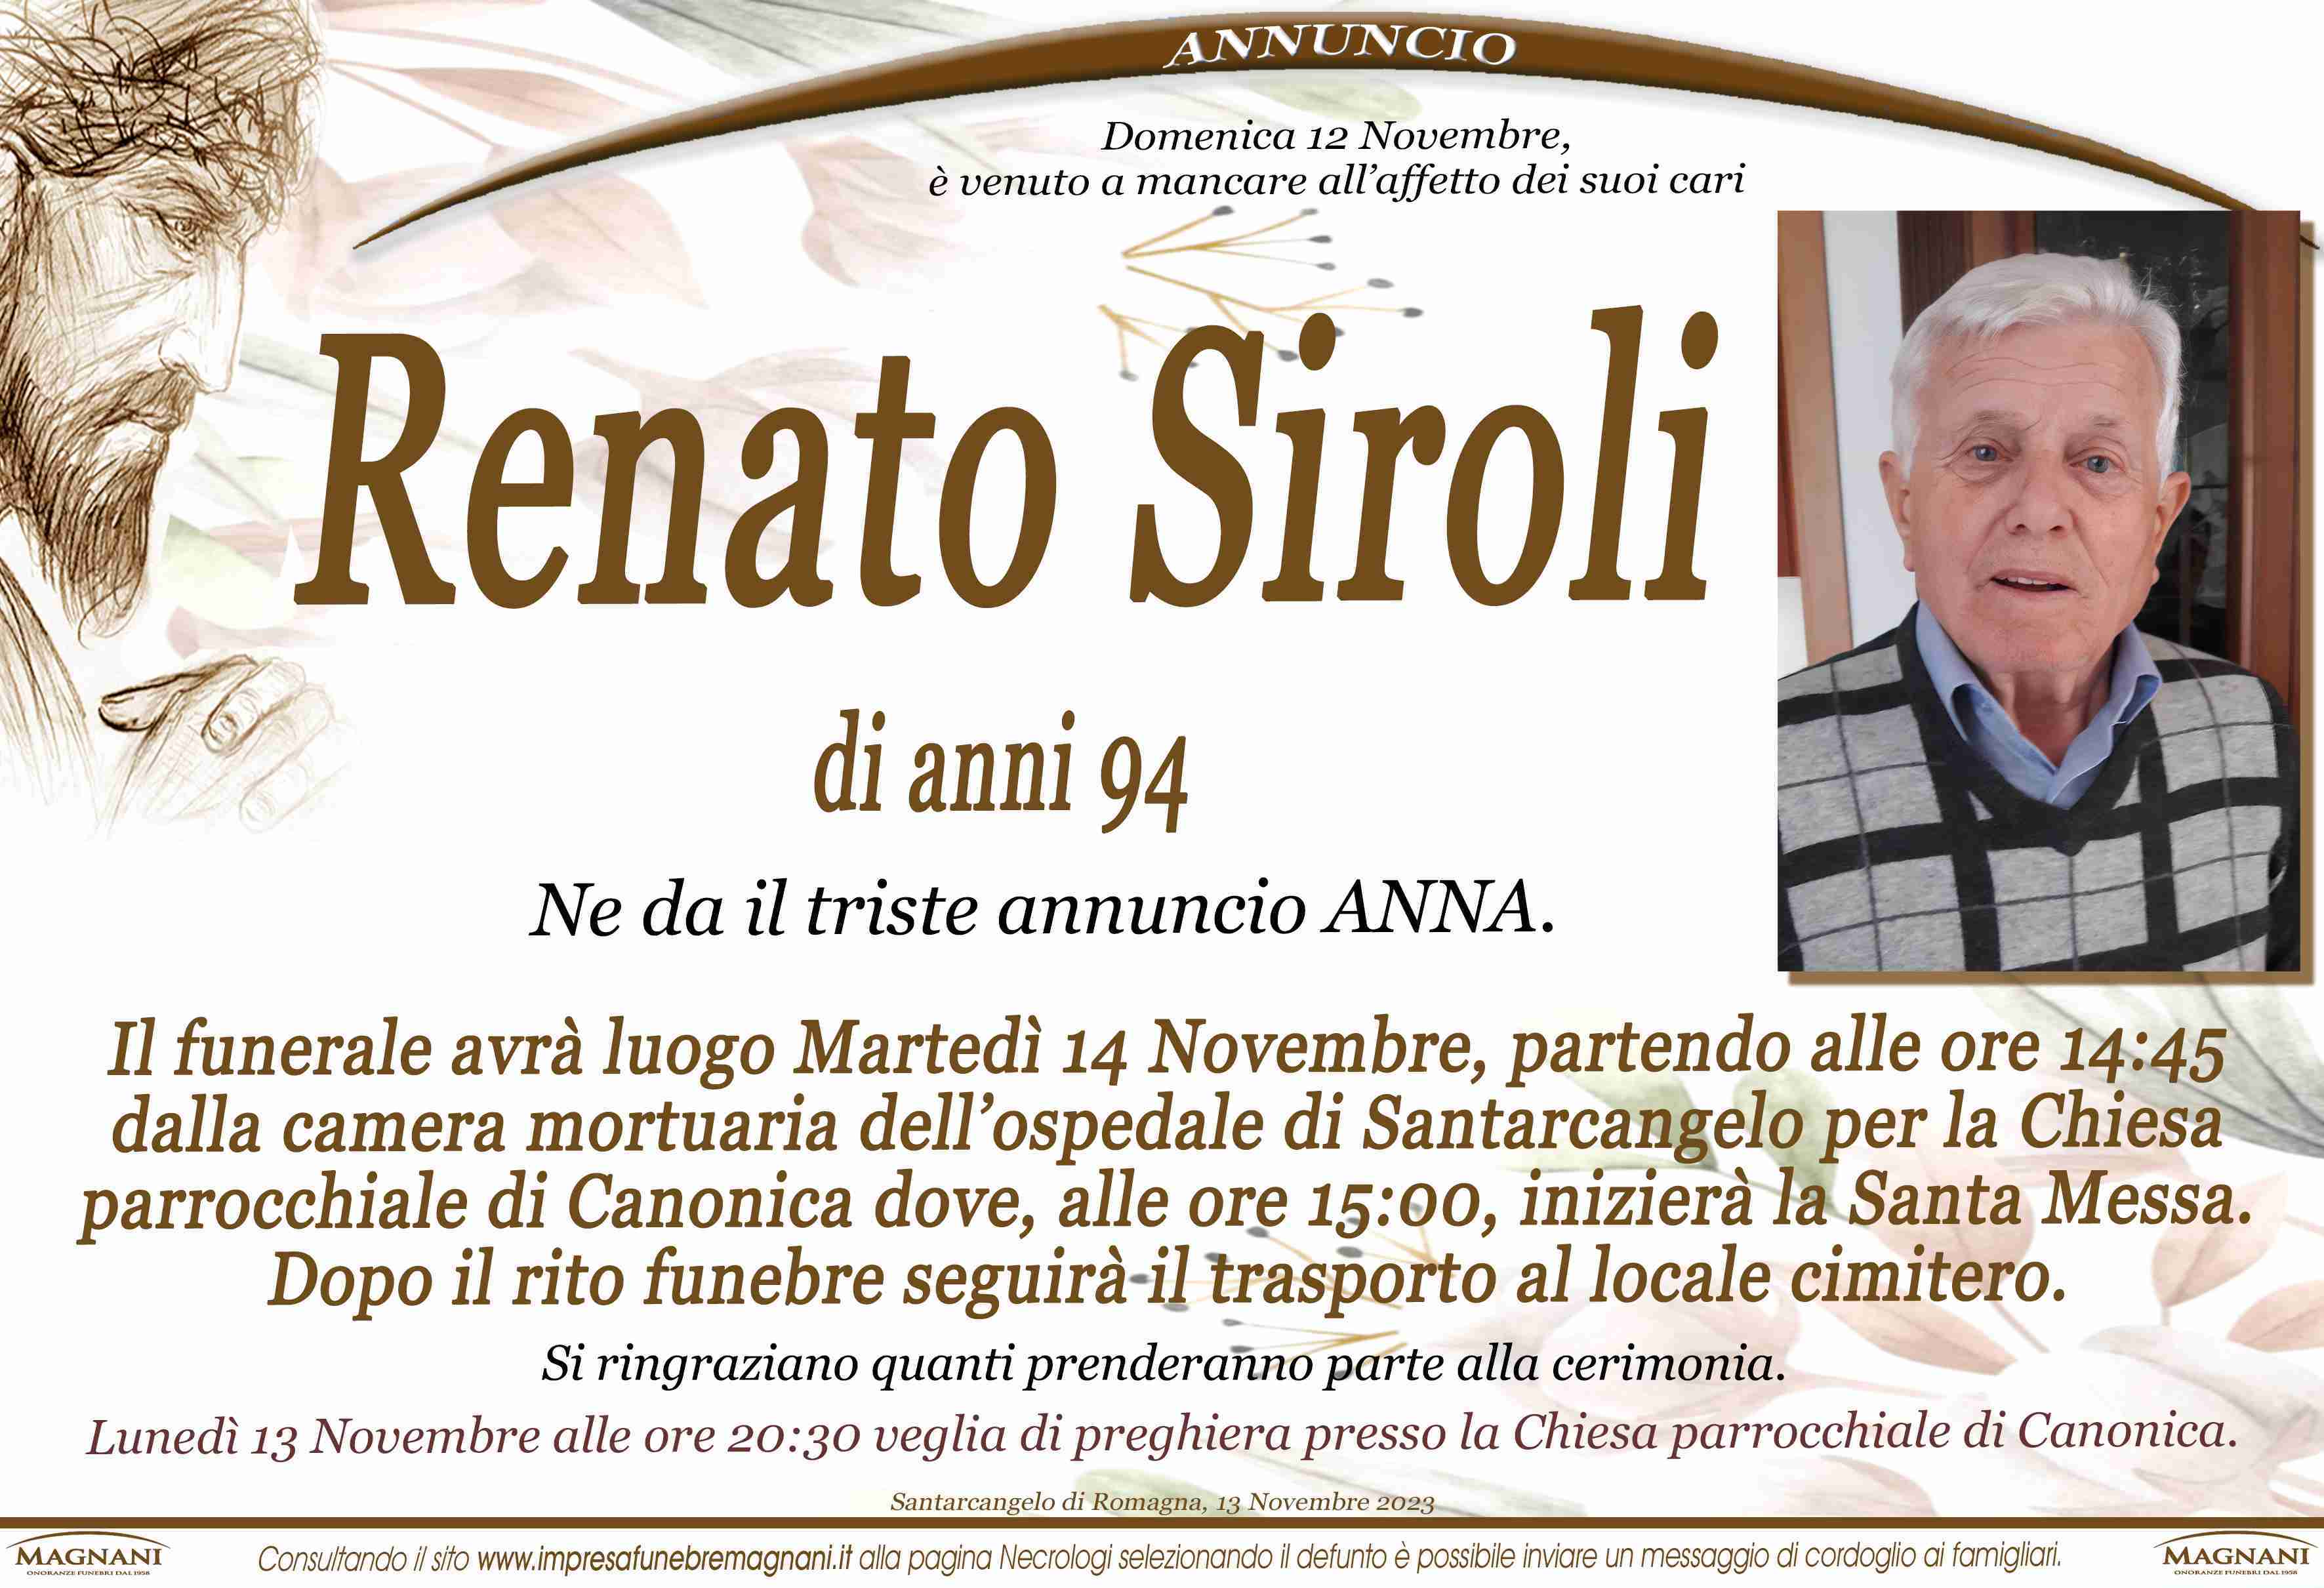 Renato Siroli